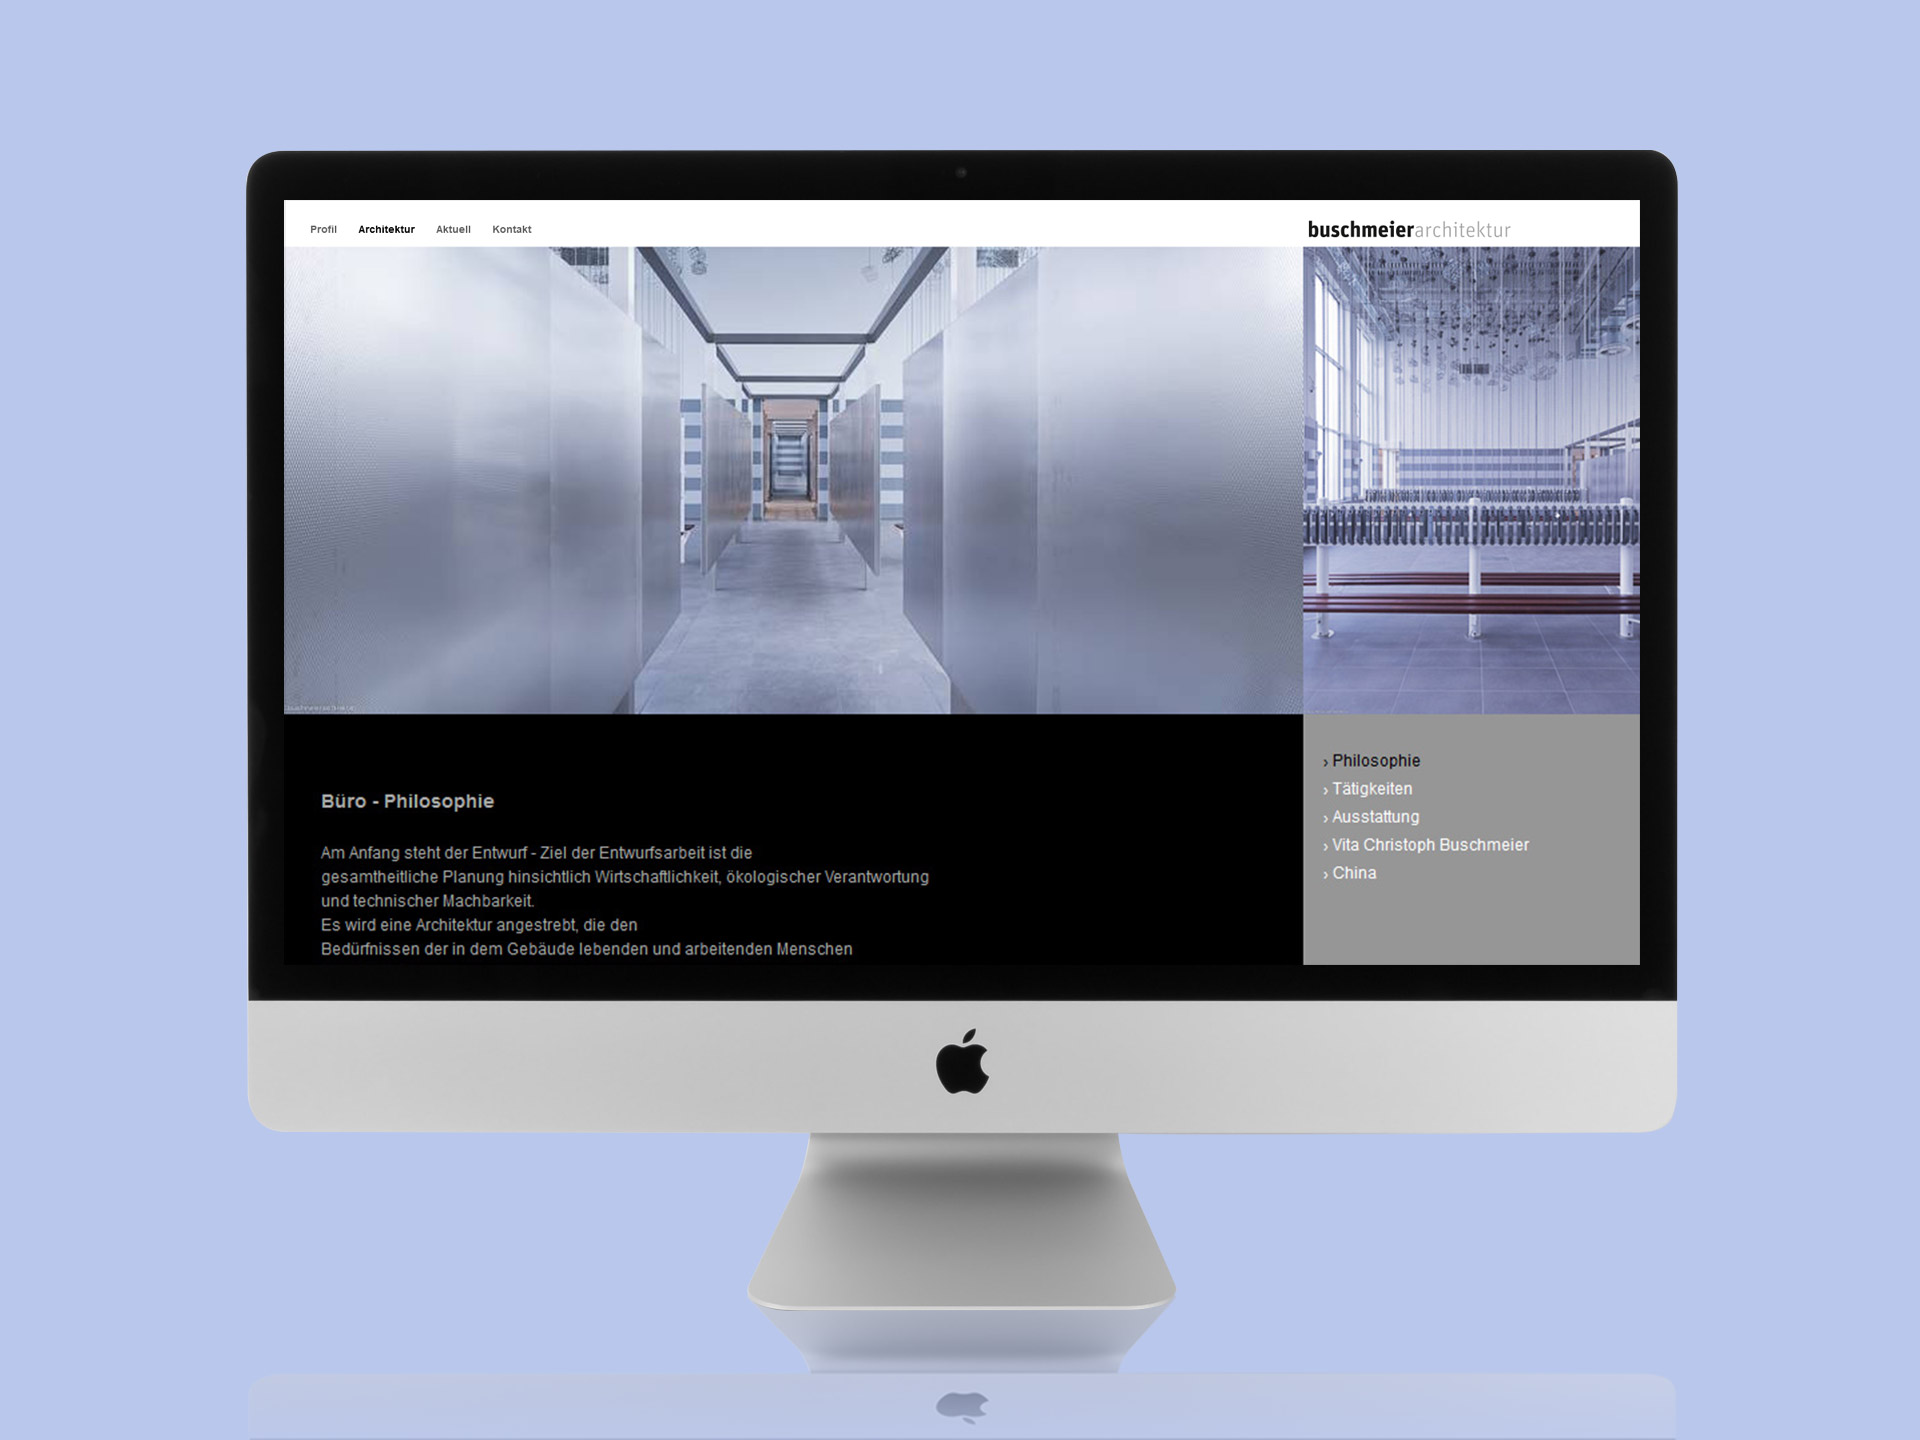 PC mit Webseite, welche Raumarchitektur zeigt